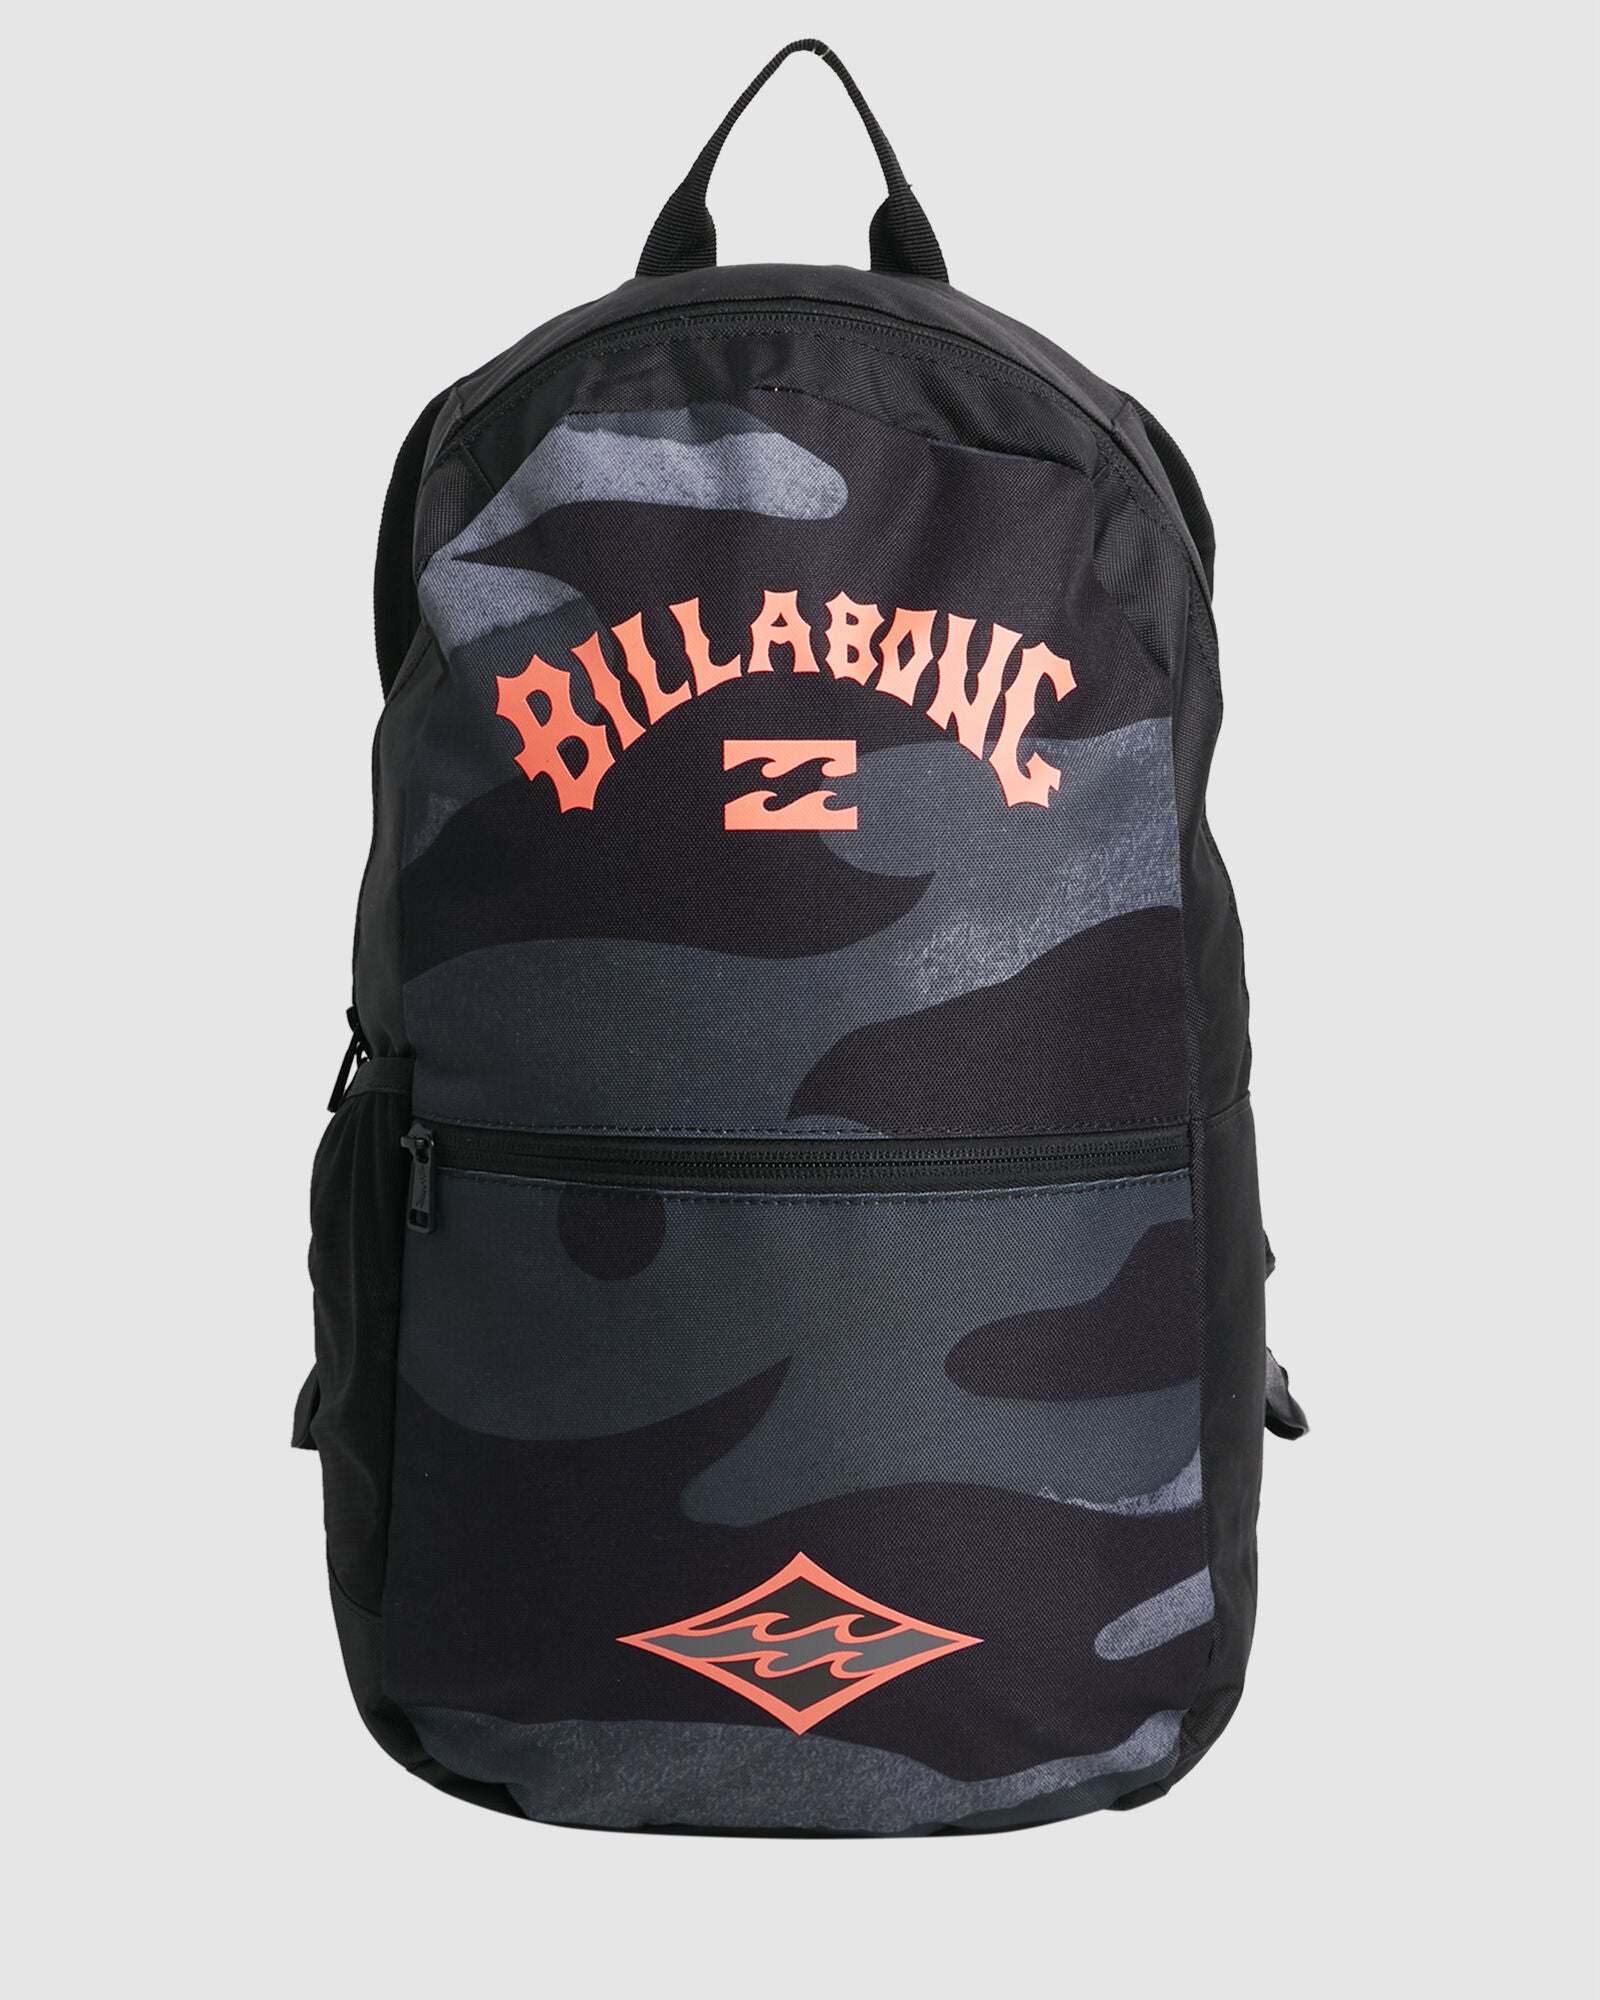 NORFOLK LITE camo billabong mens backpack back to school compartments screen logo drink bottle holder